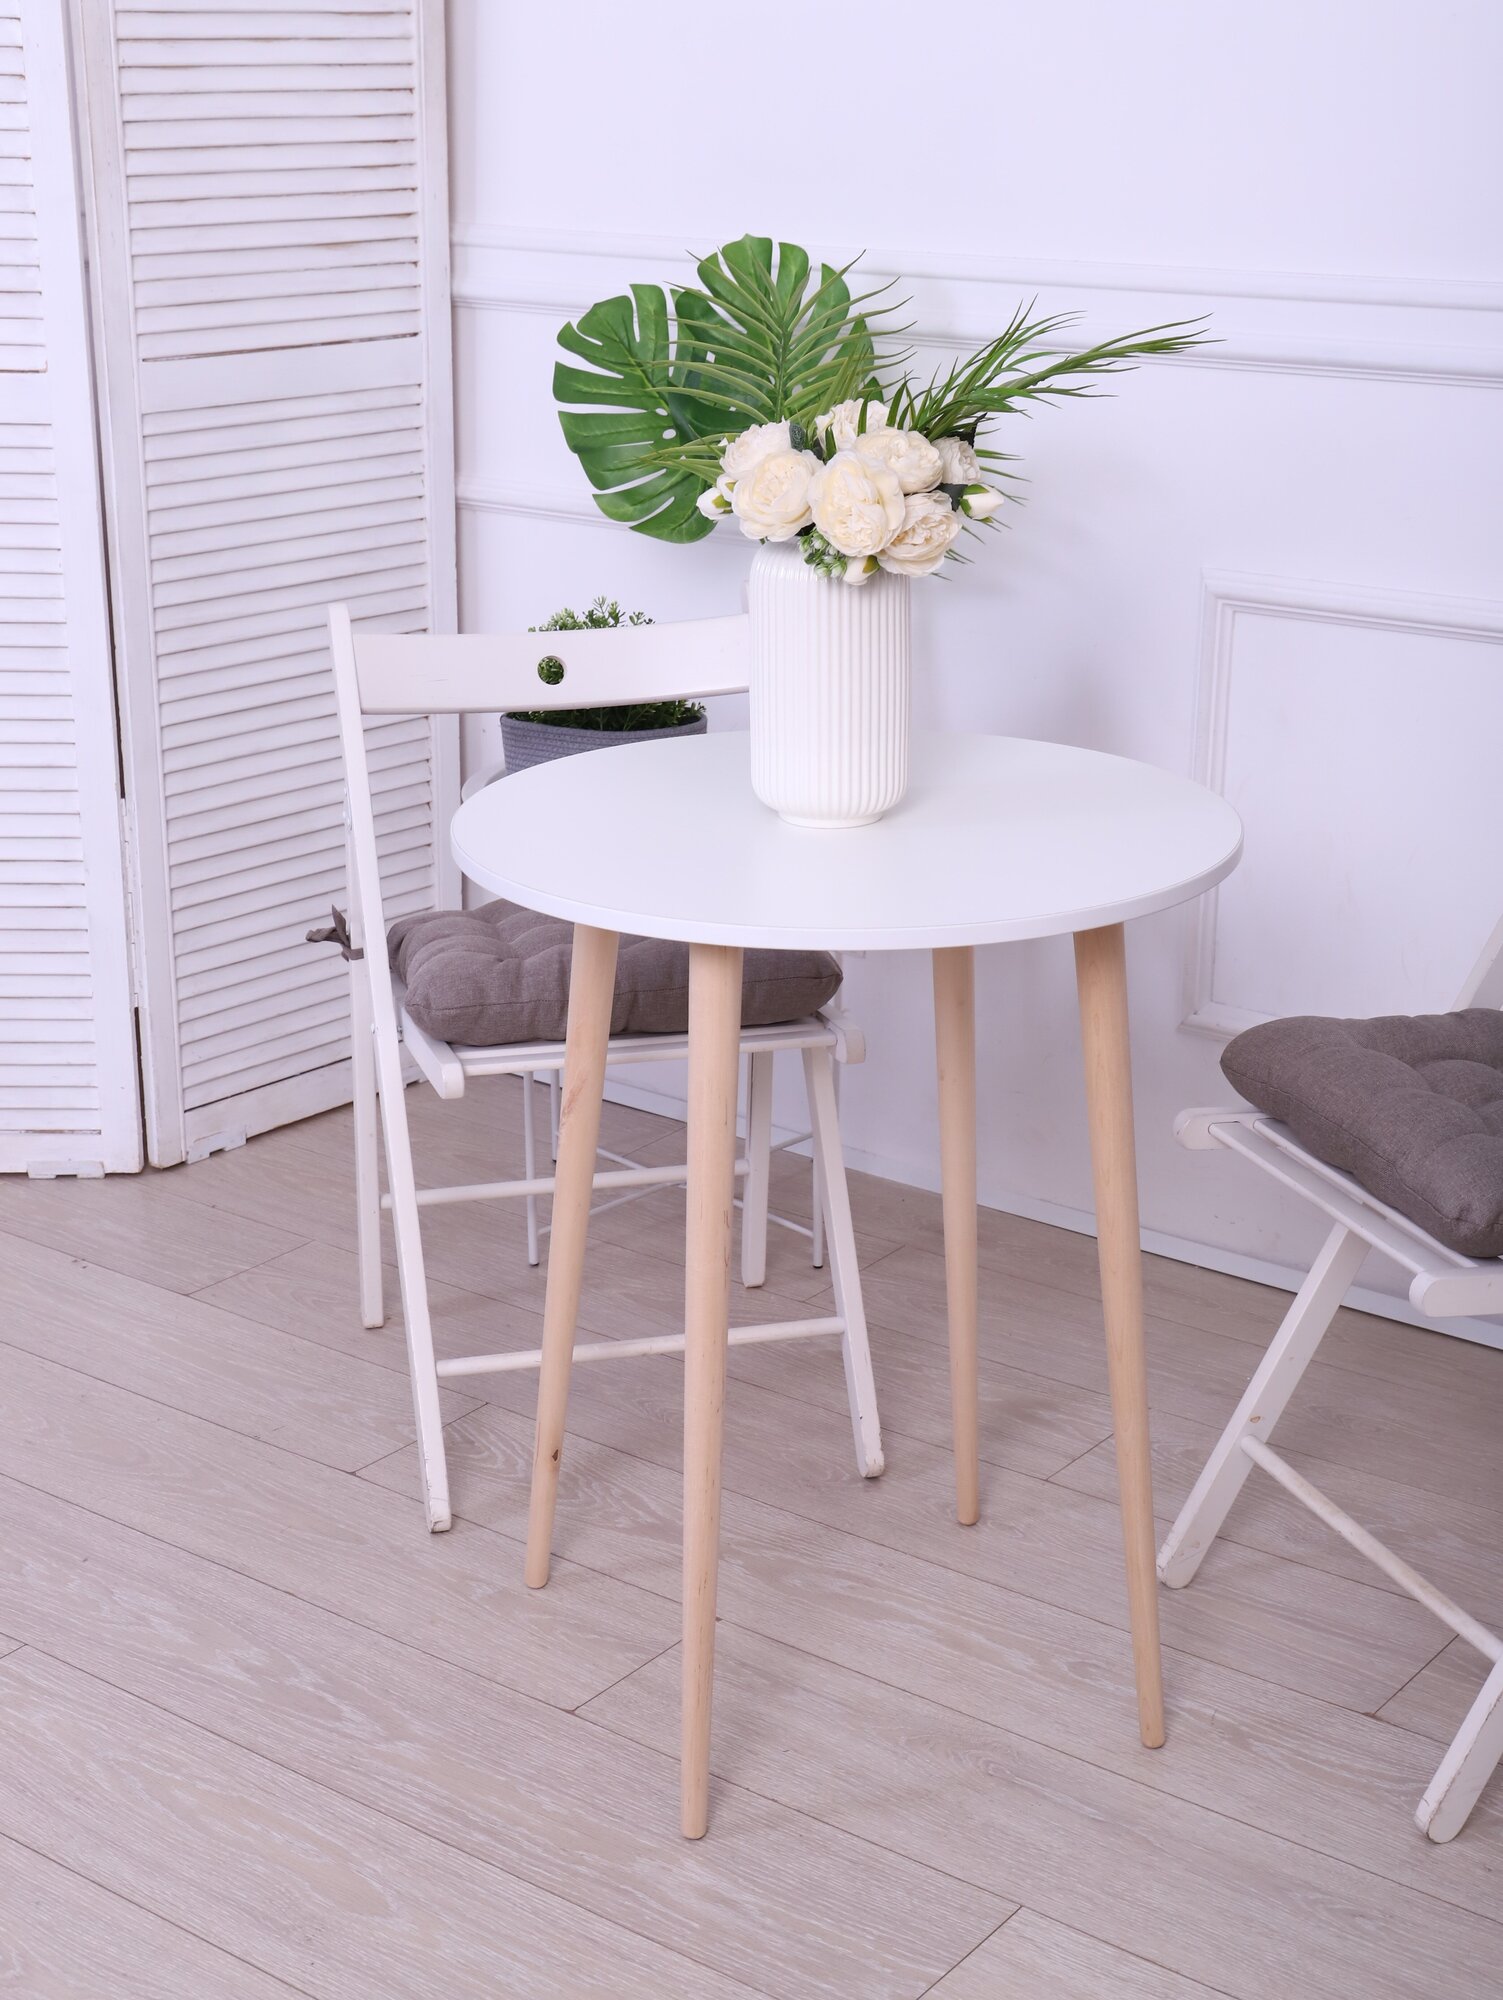 Стол кухонный лофт обеденный круглый, белый, подстолье - ножки дерево "Дуб", ЛДСП цвет "Белый" 60х75 см